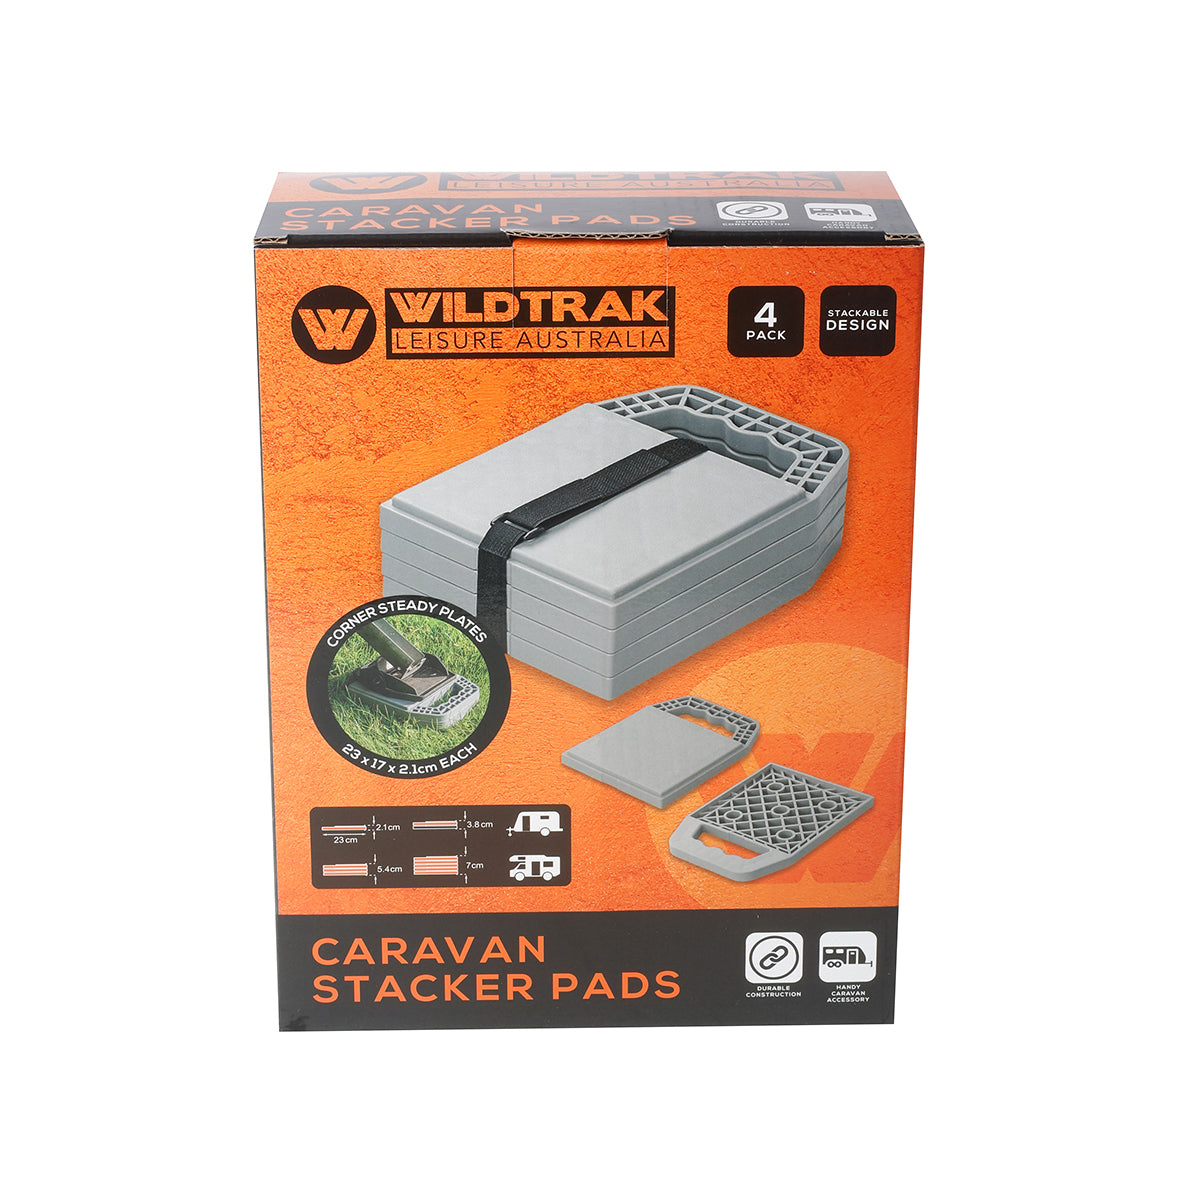 CARAVAN STACKER PADS - PACK OF 4